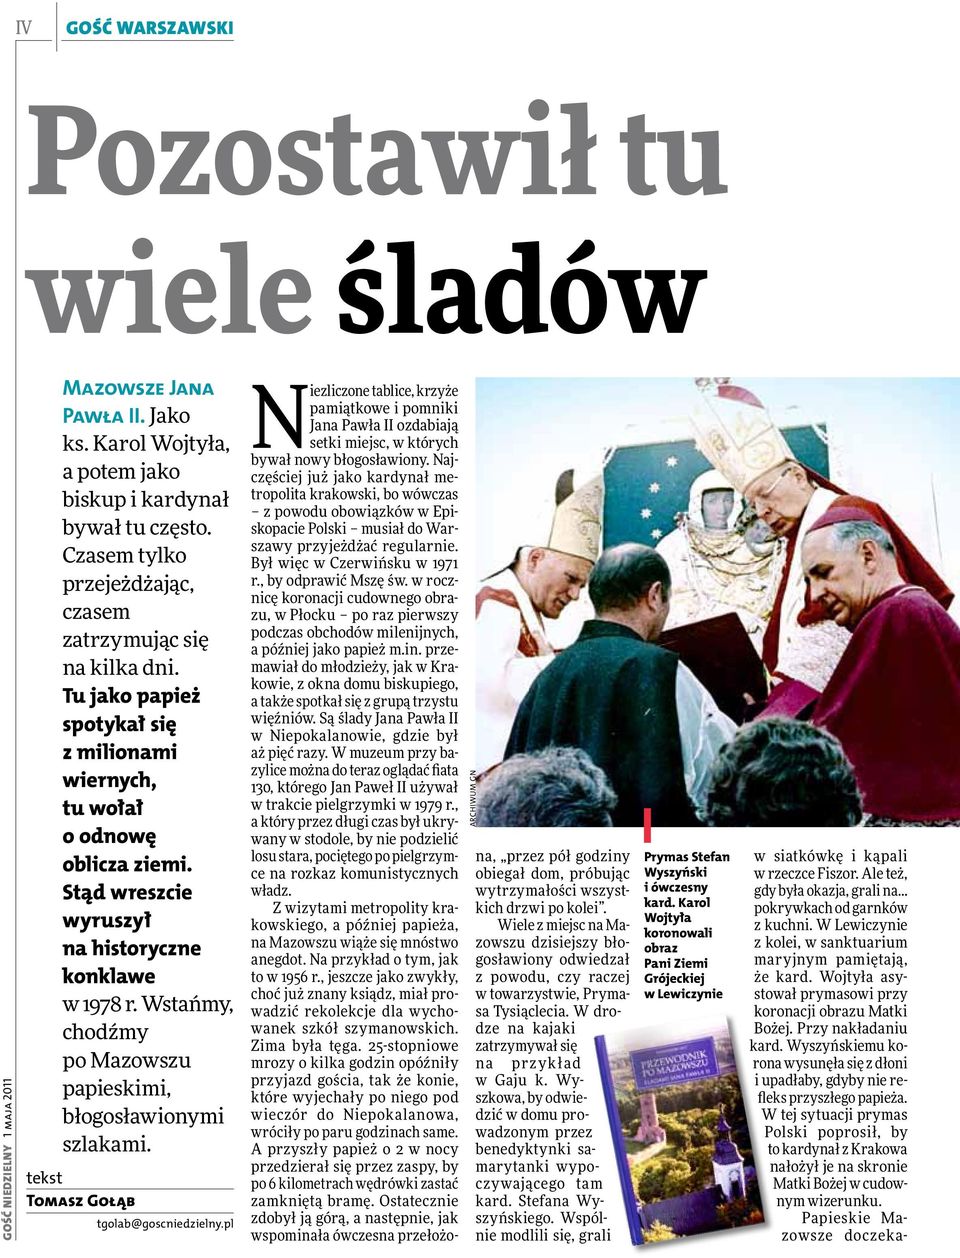 Stąd wreszcie wyruszył na historyczne konklawe w 1978 r. Wstańmy, chodźmy po Mazowszu papieskimi, błogosławionymi szlakami. tekst tgolab@goscniedzielny.